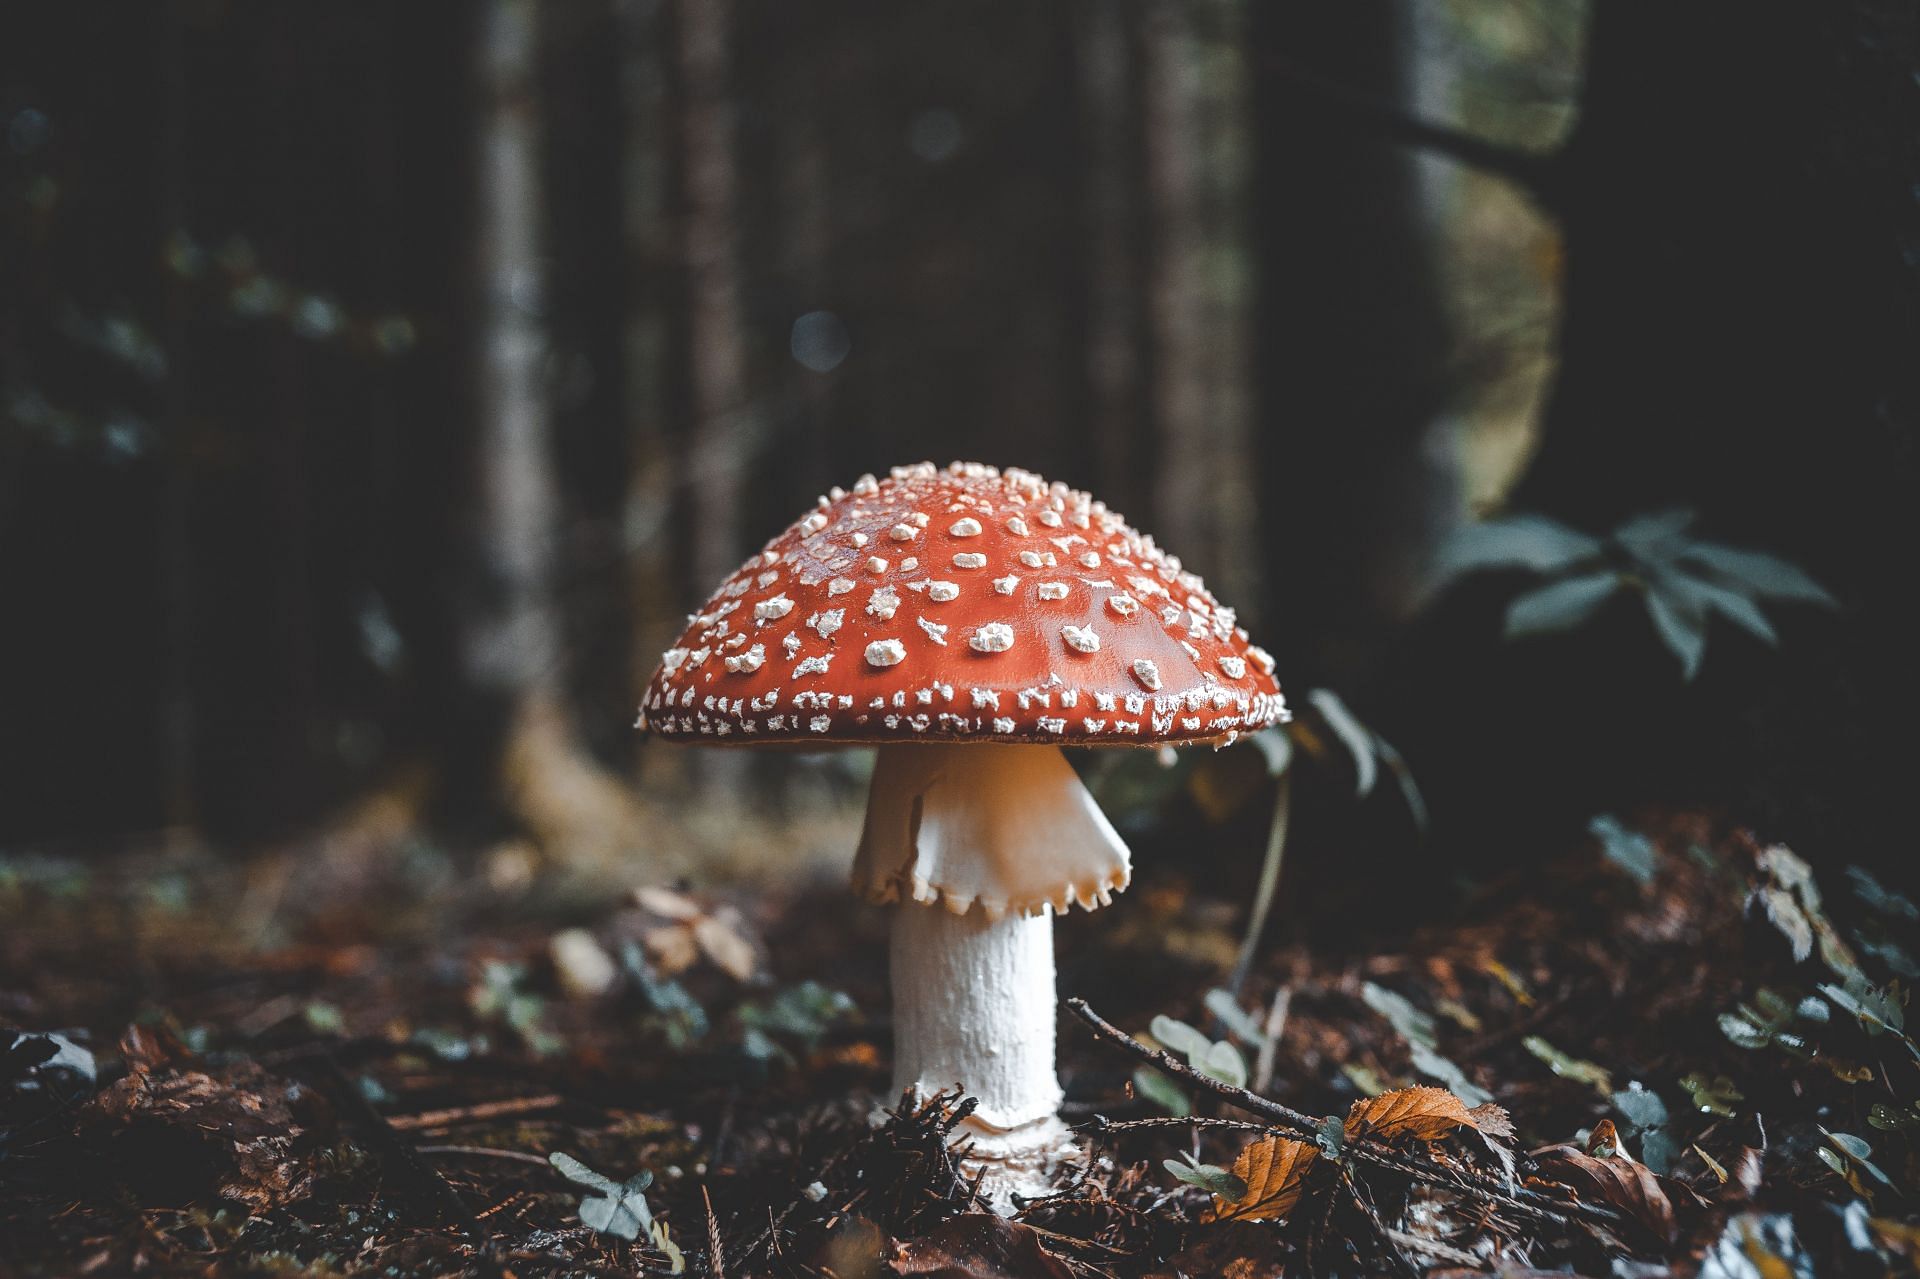 Types of mushrooms (Image via Unsplash/Florian)